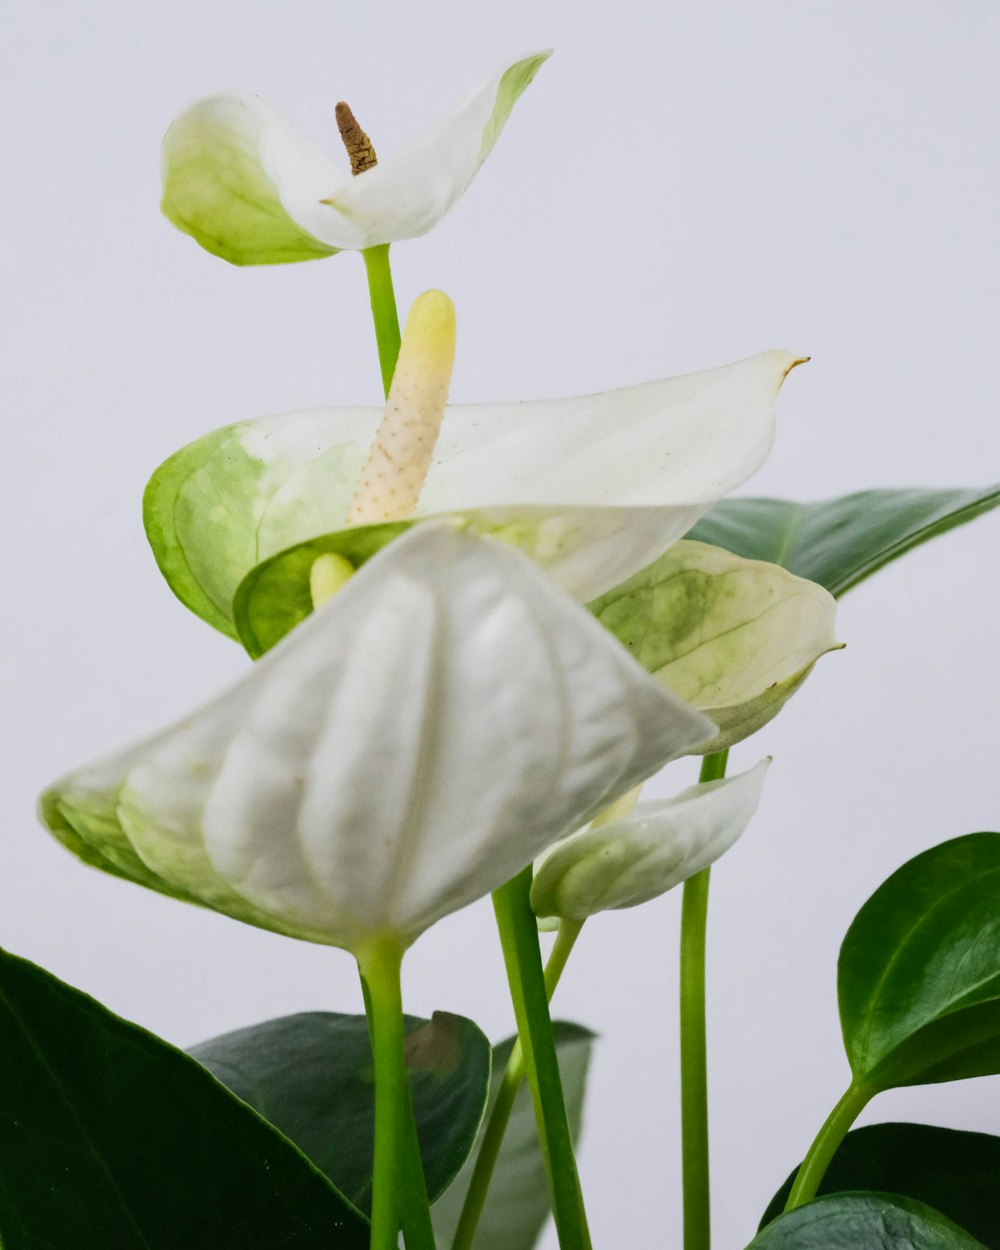 fiore bianco e verde con foglie verdi